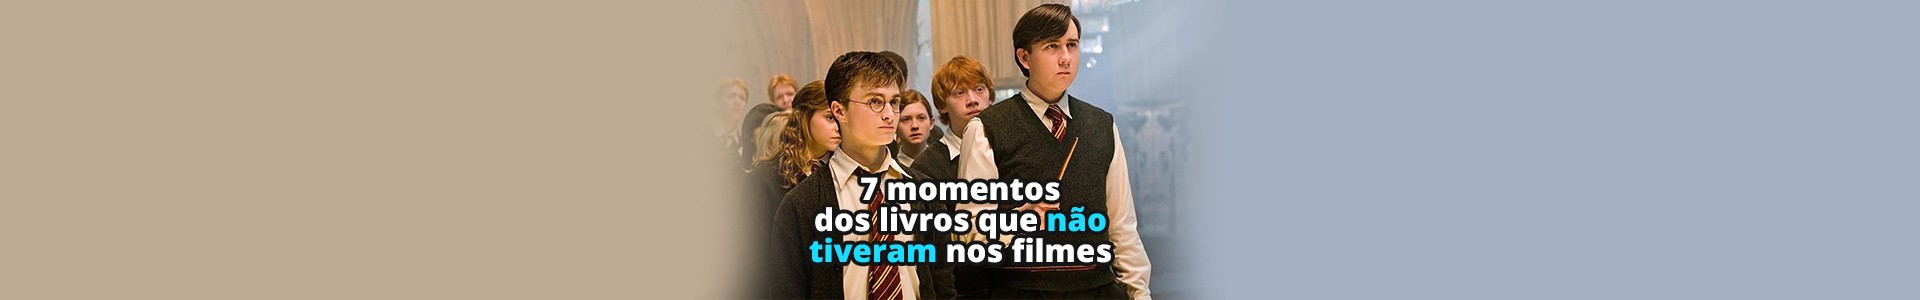 7 momentos dos livros de Harry Potter que não aconteceram nos filmes